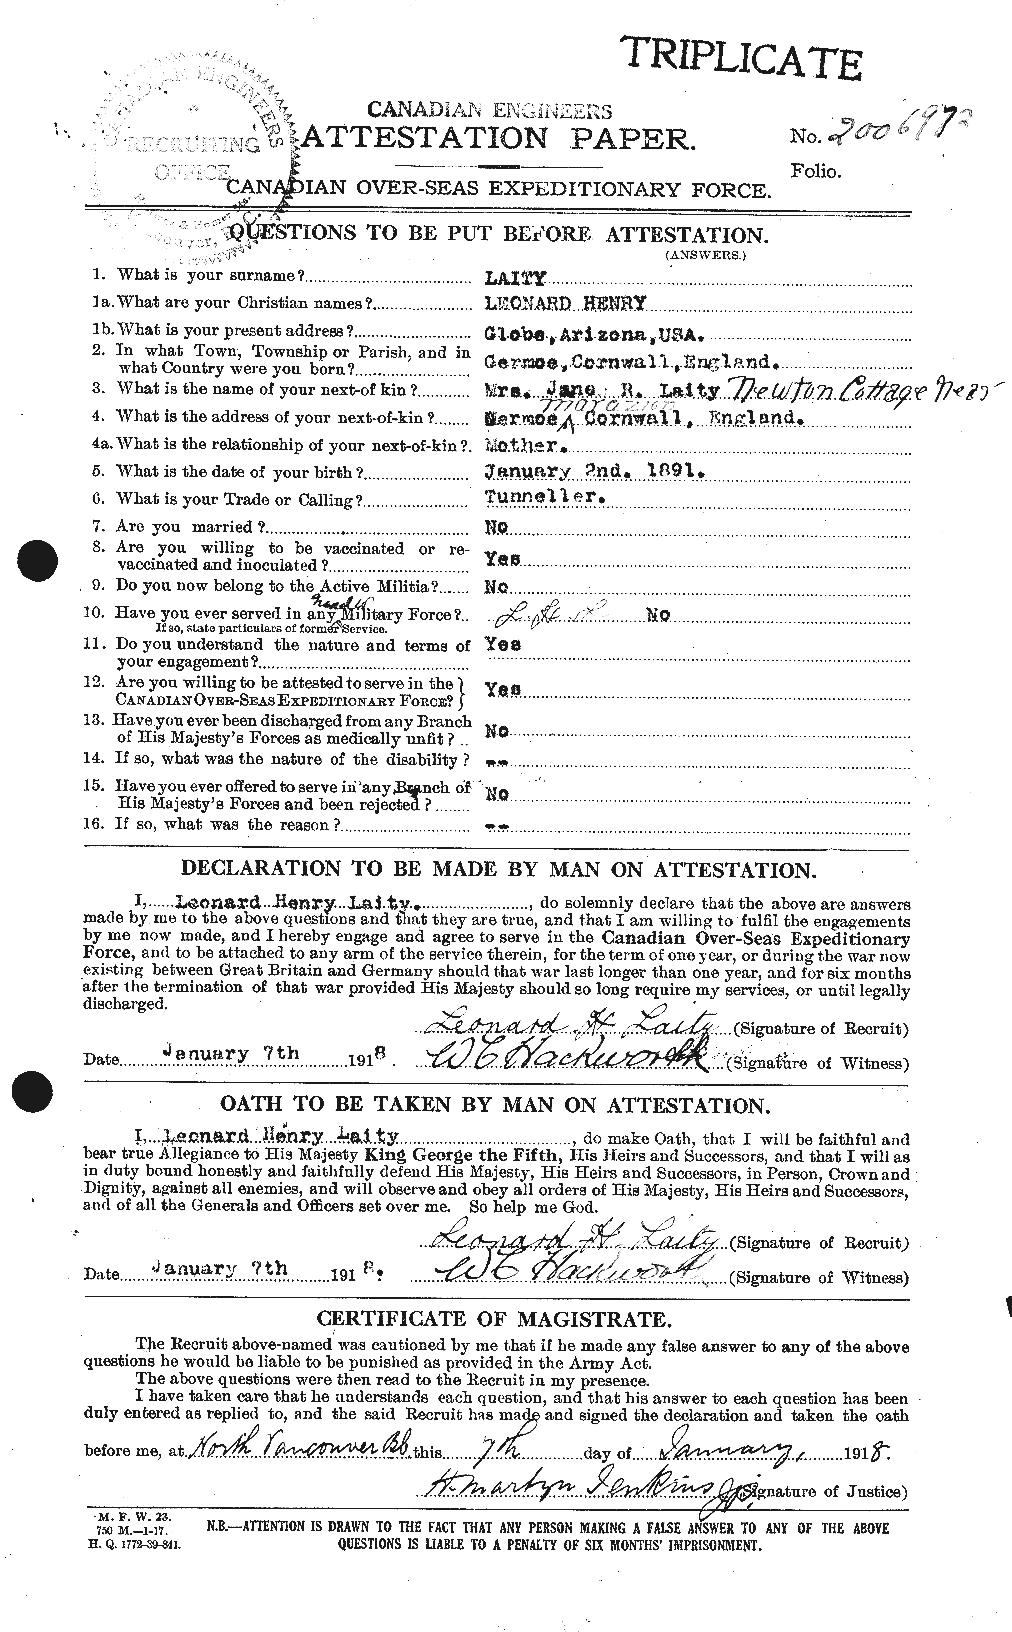 Dossiers du Personnel de la Première Guerre mondiale - CEC 448942a